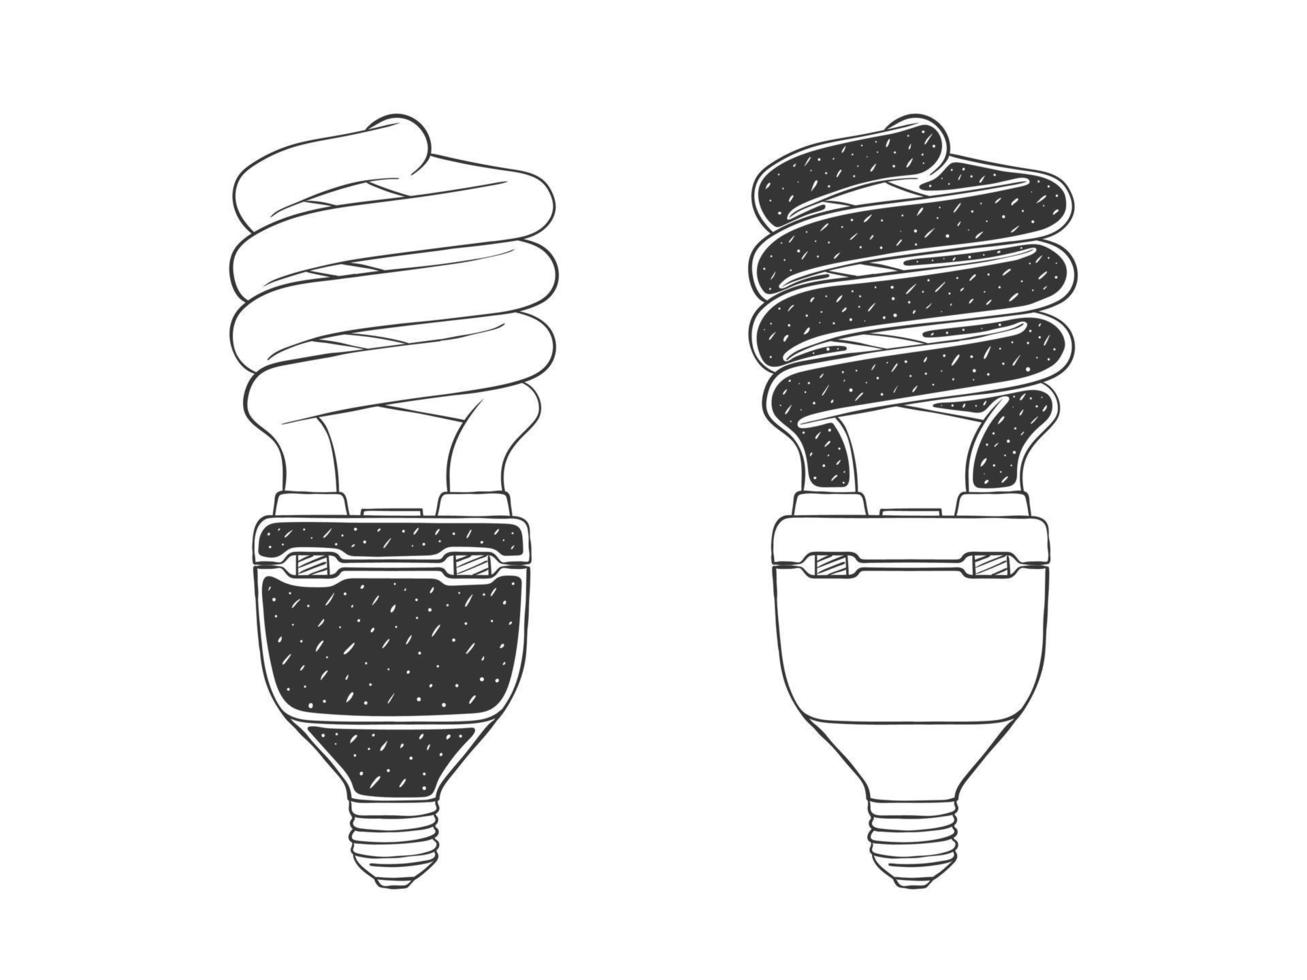 bombillas de luz doodle, iconos de ideas dibujados a mano. boceto de dos bombillas. ilustración vectorial vector